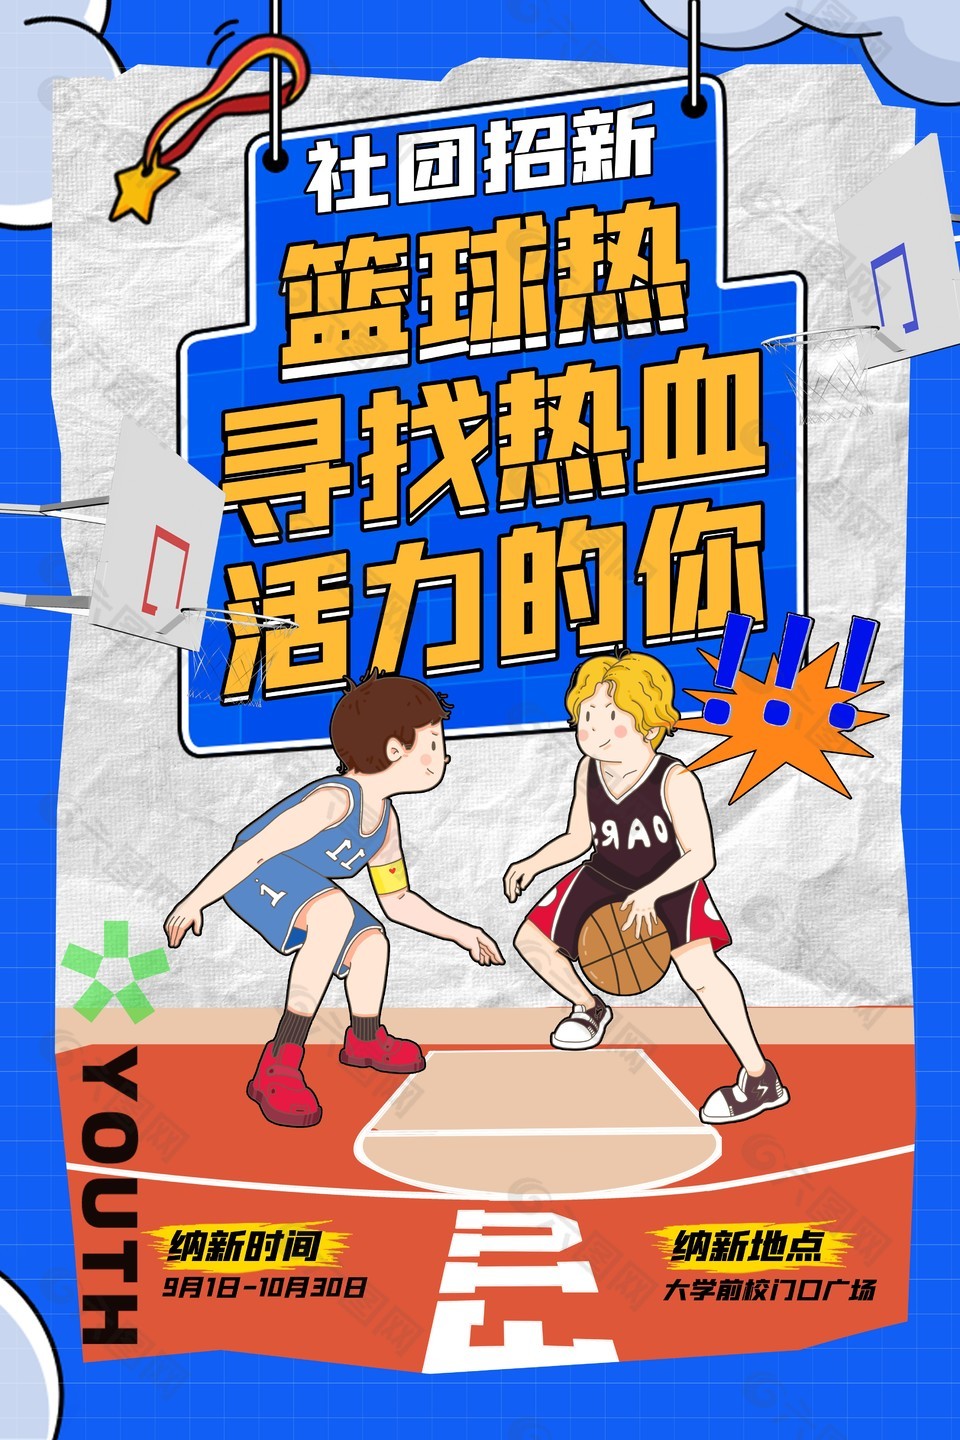 热血篮球创意插画趣味性海报